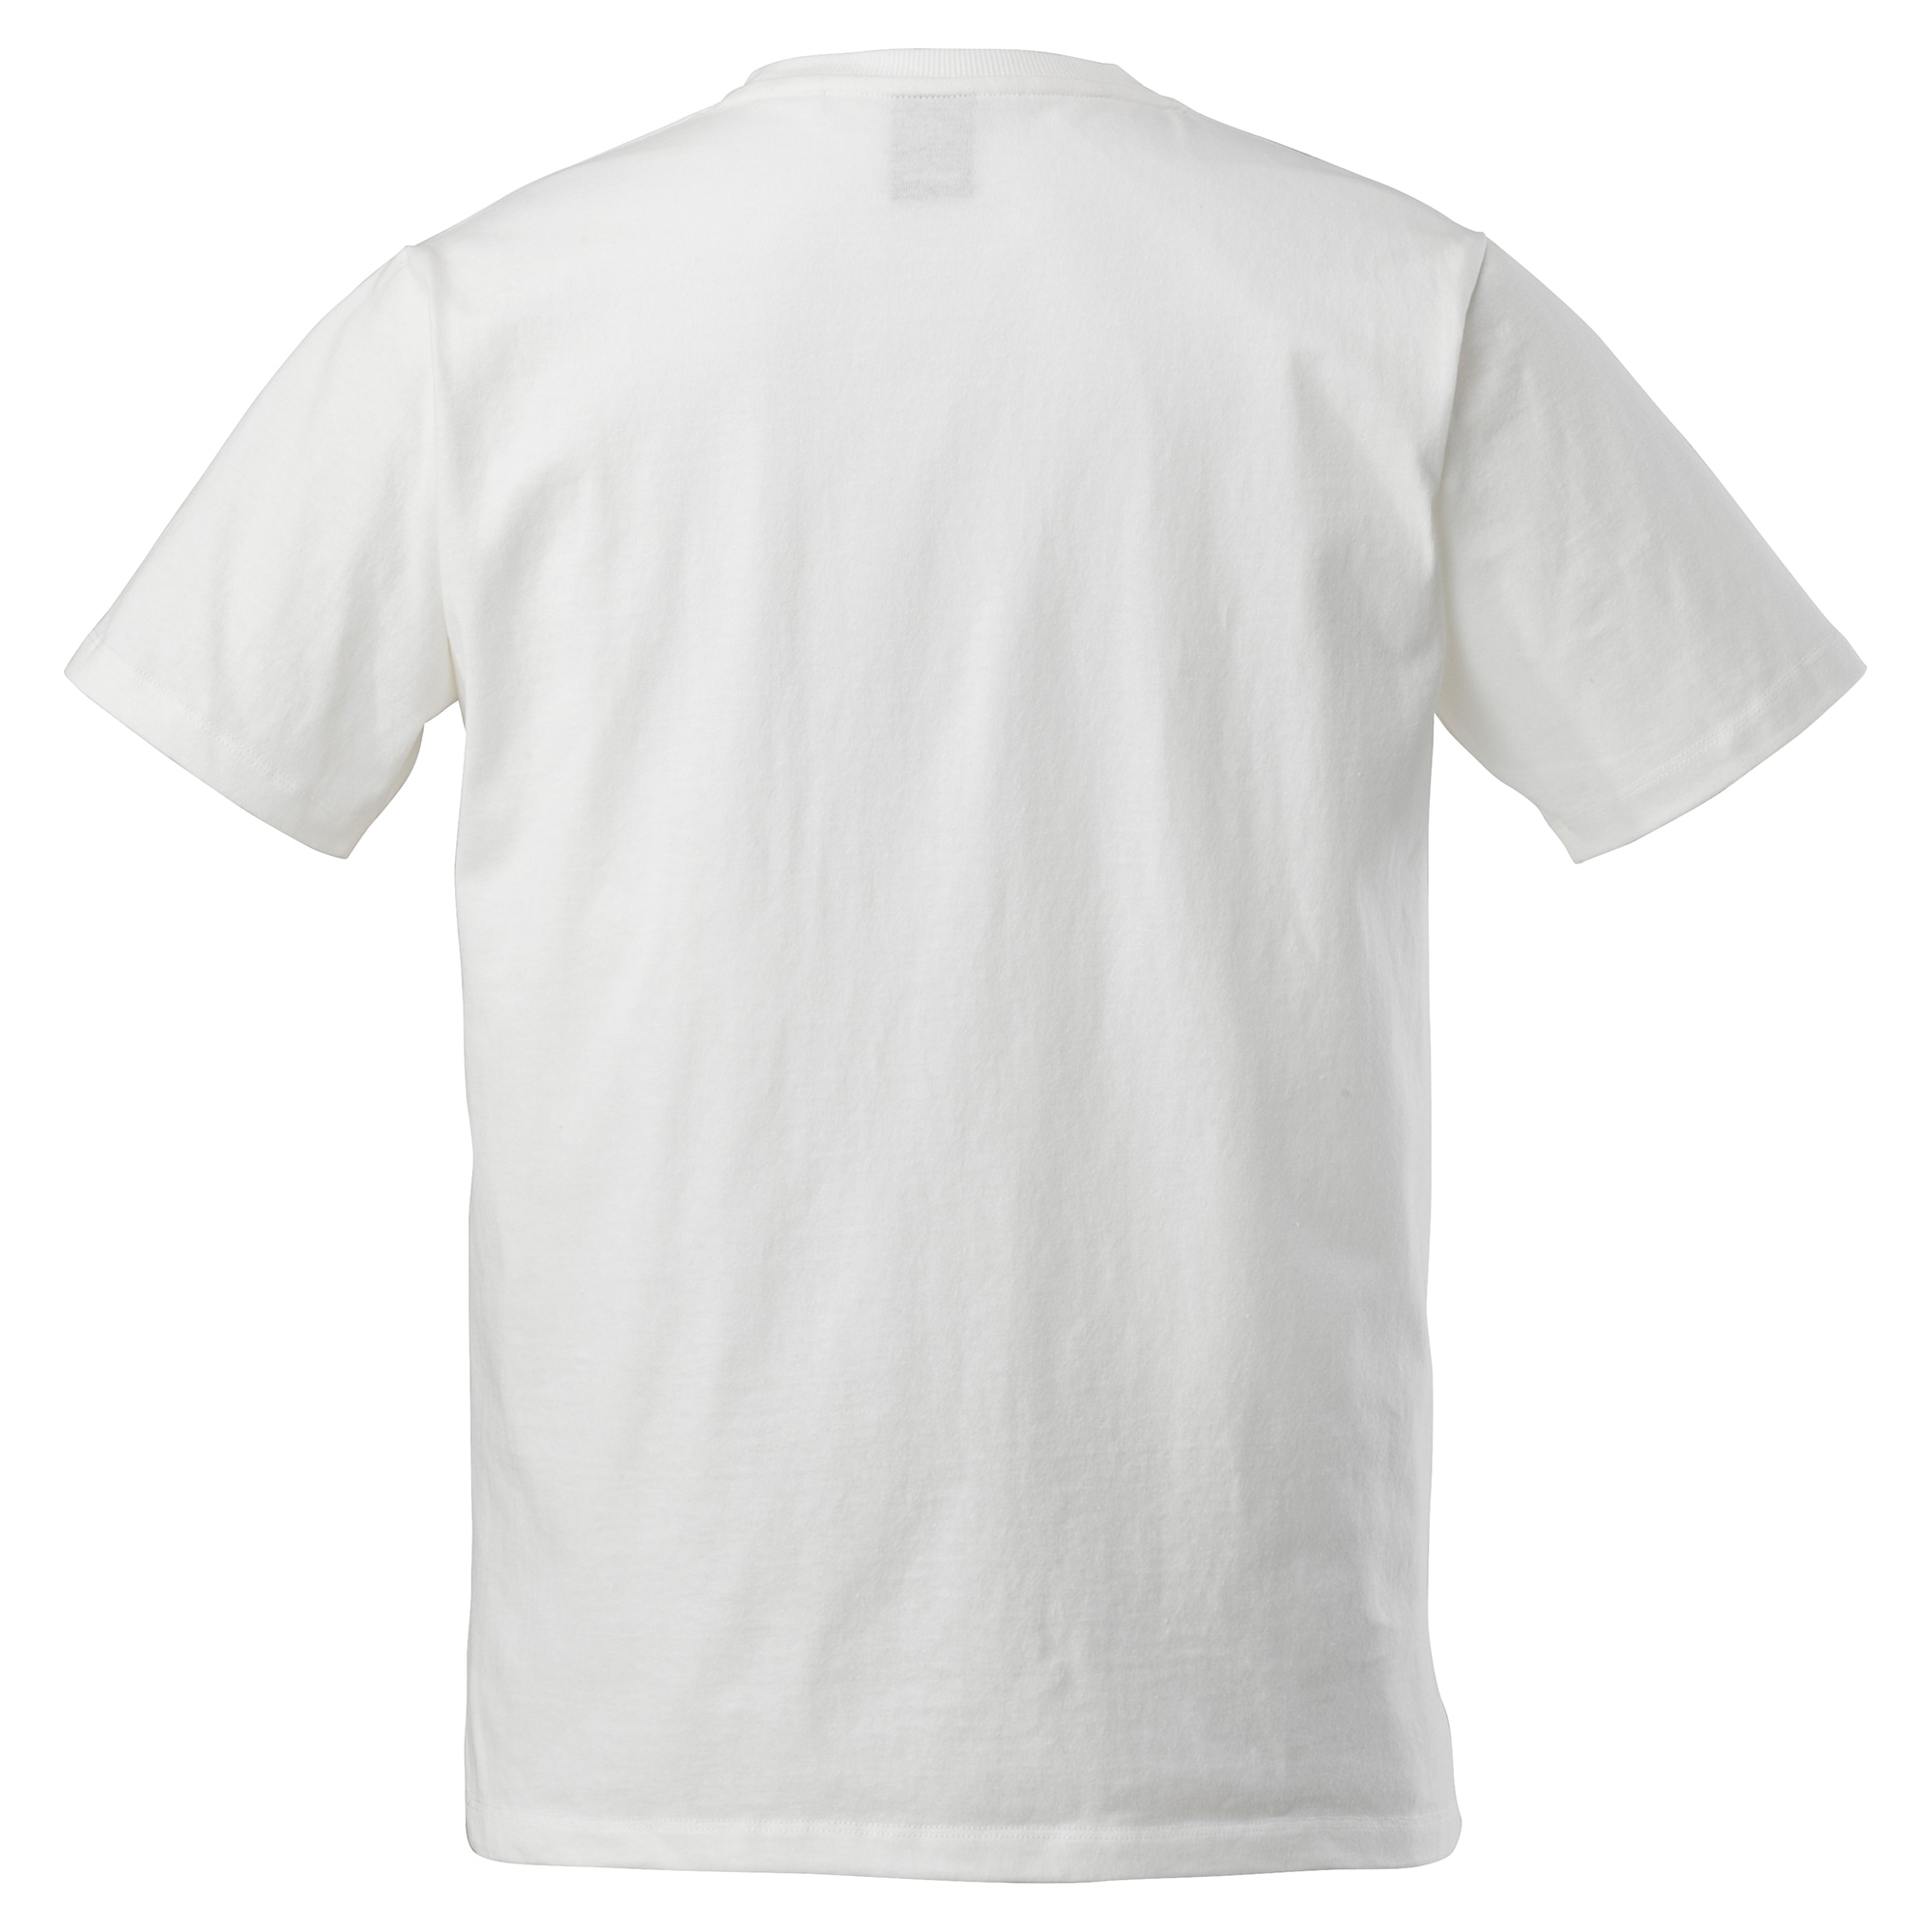 【ミズノ公式】撥水Tシャツ(半袖)[メンズ] 05 グレー杢 M ウエア Tシャツ 長袖